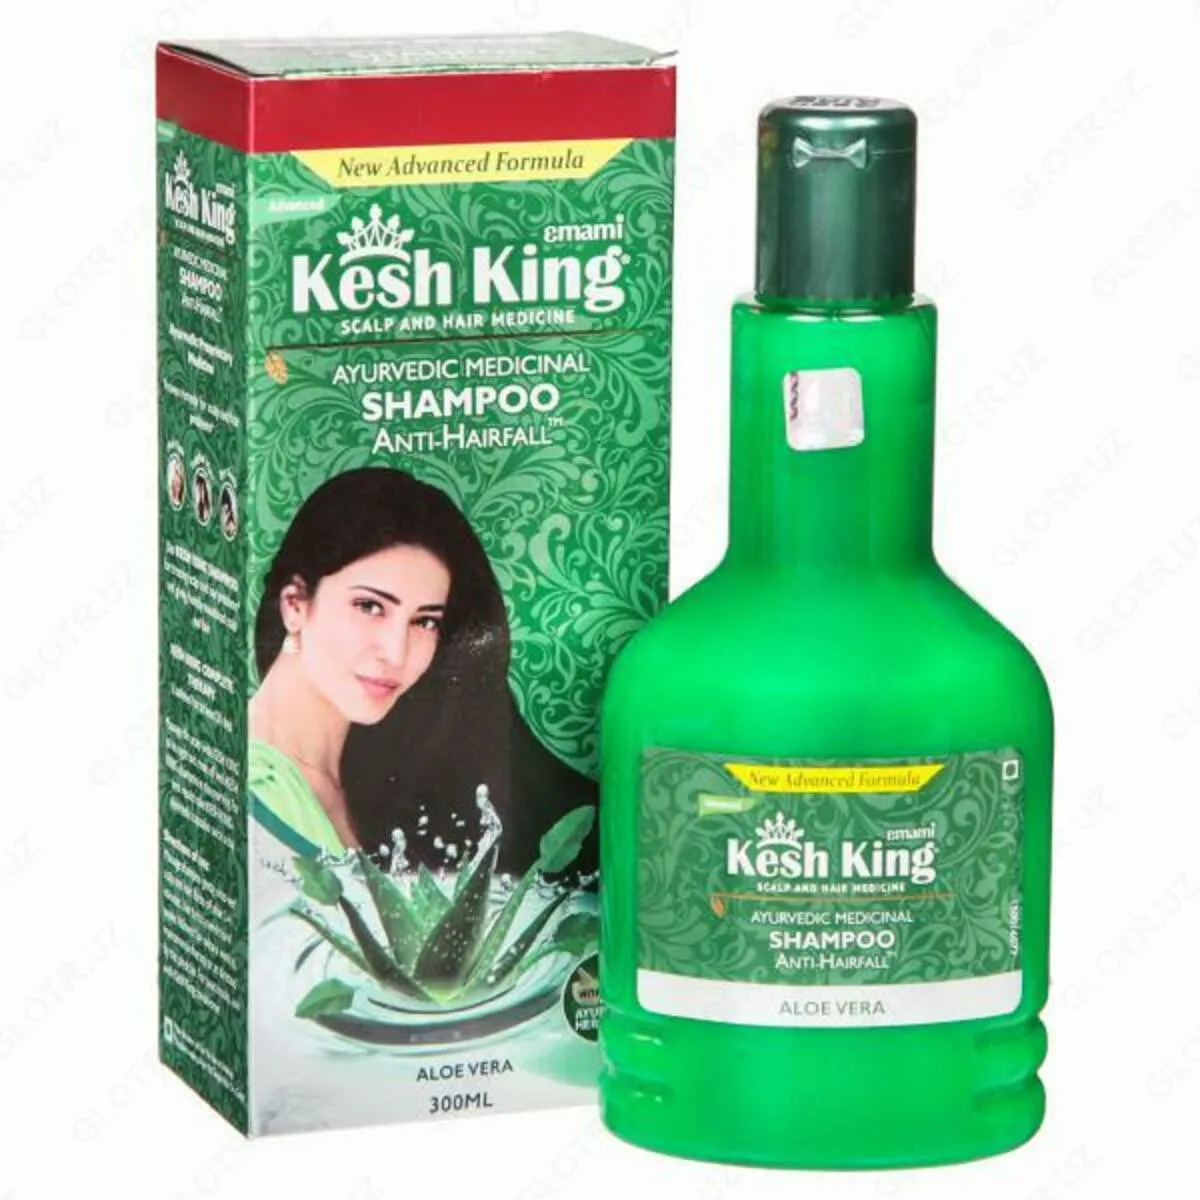 Аюрведический лечебный шампунь против выпадения волос Kesh King (200 мл)#2